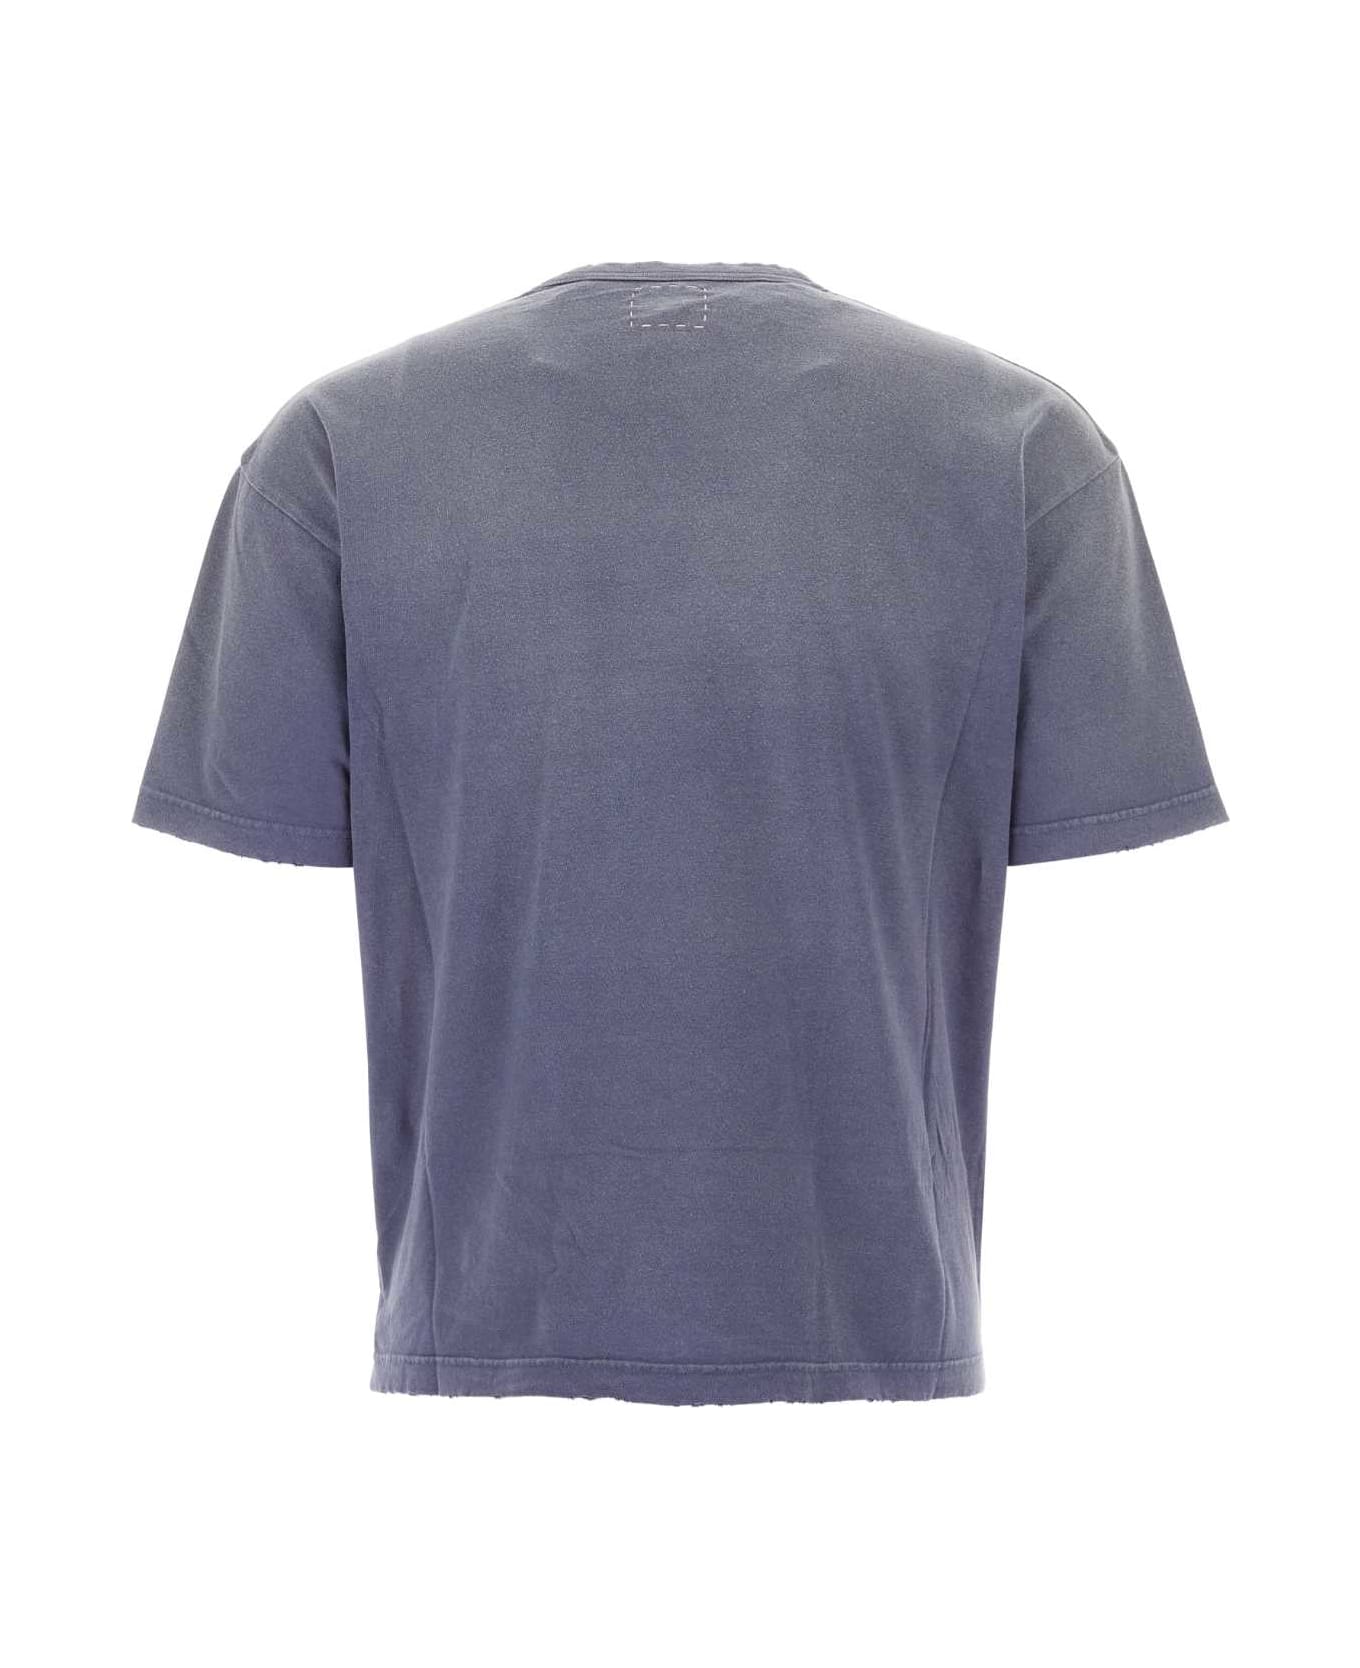 Visvim Purple Cotton Jumbo T-shirt - NAVY シャツ